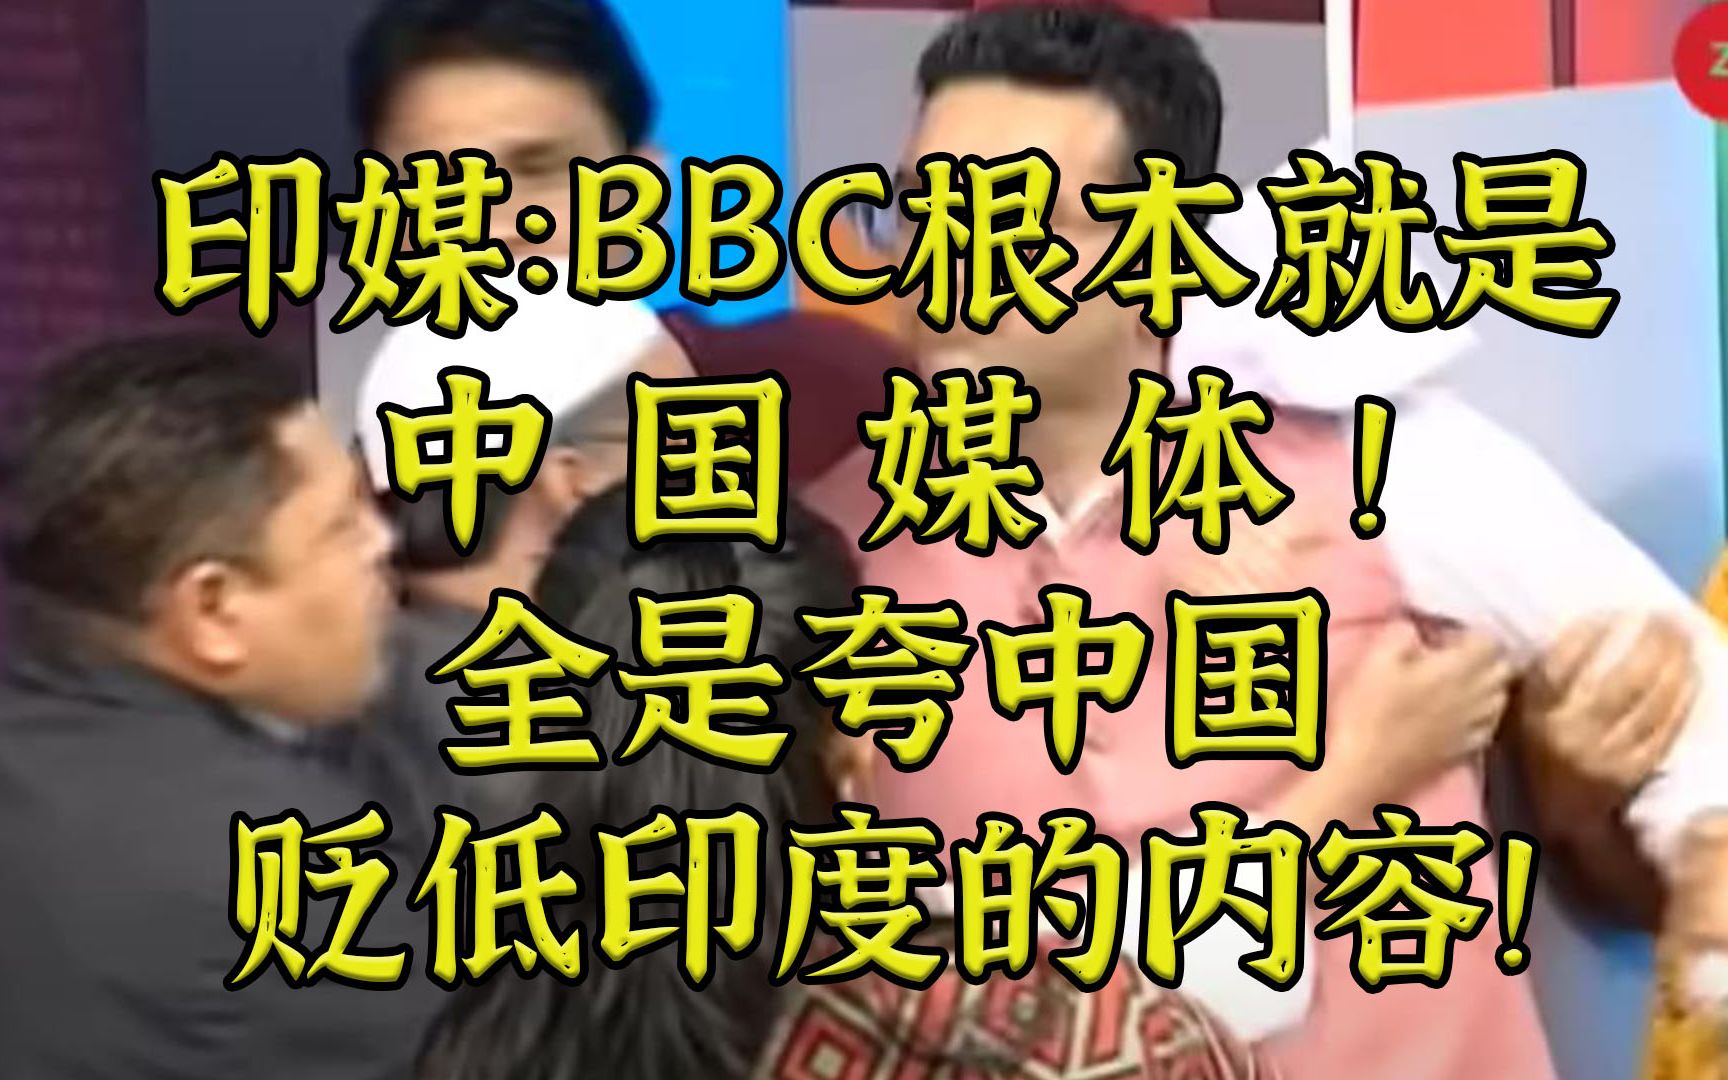 印媒：BBC根本就是中国媒体，全是夸中贬印的报道！